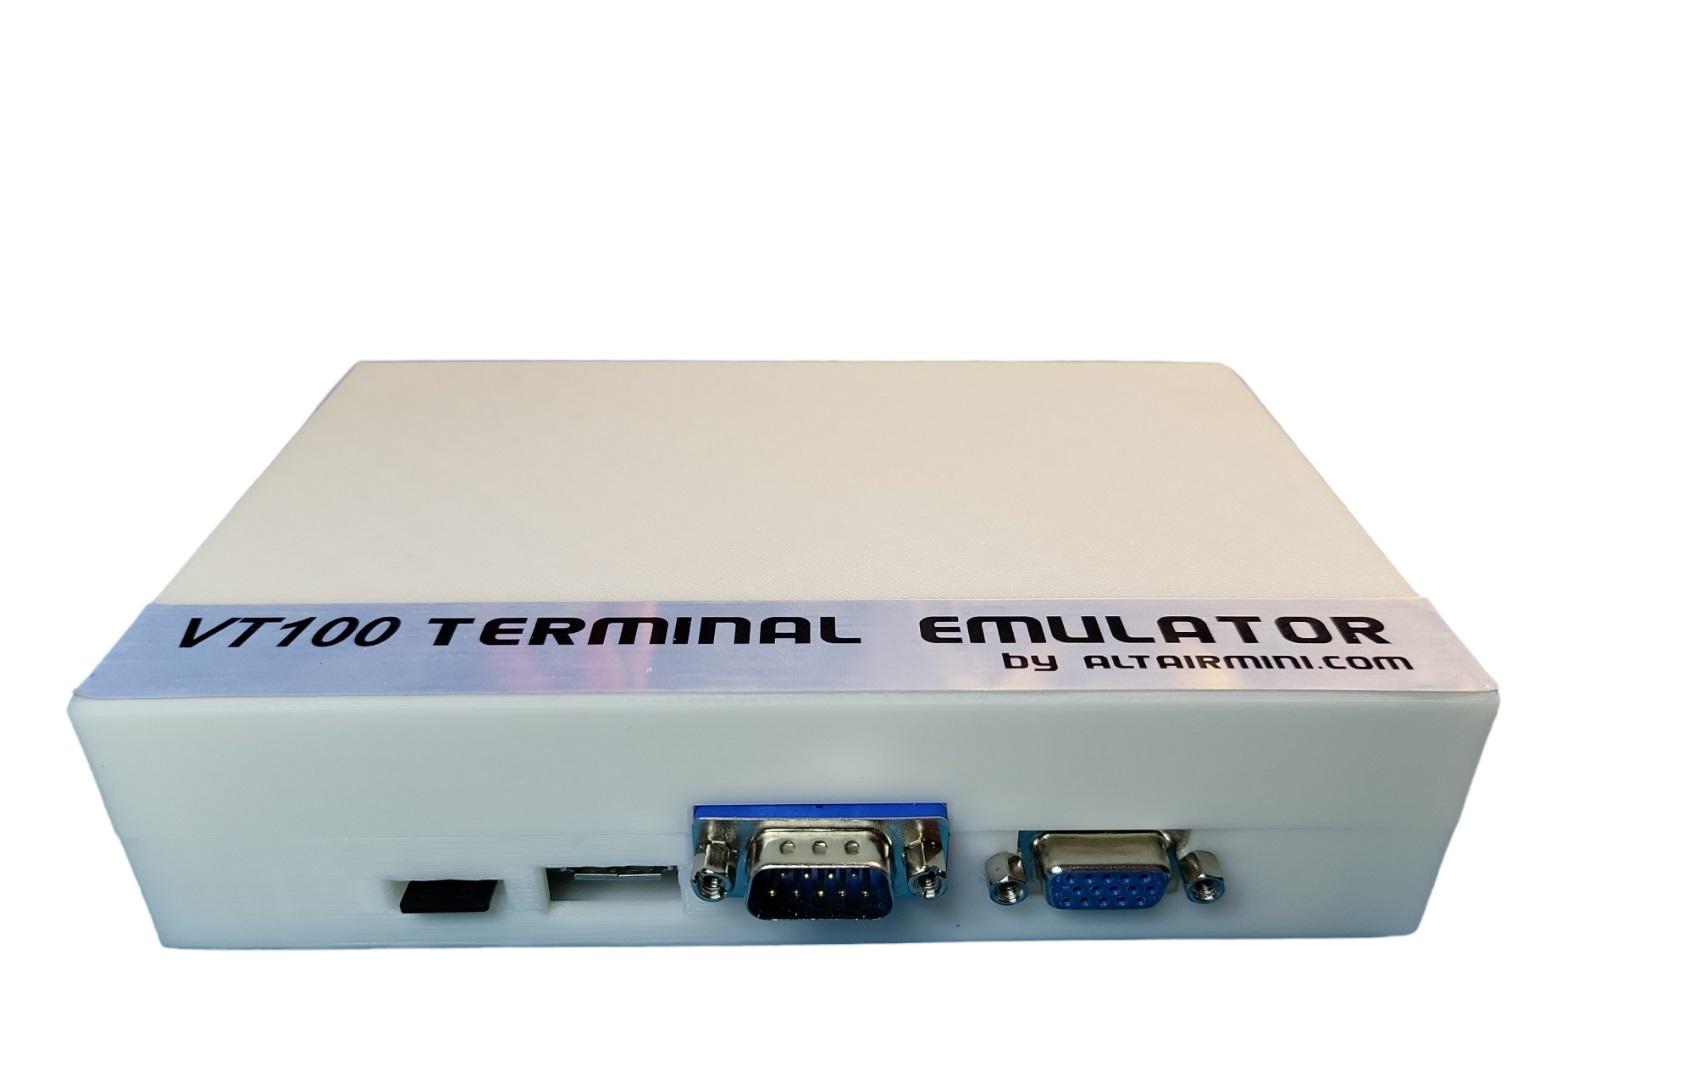 VGA Serial TERMINAL EMULATOR